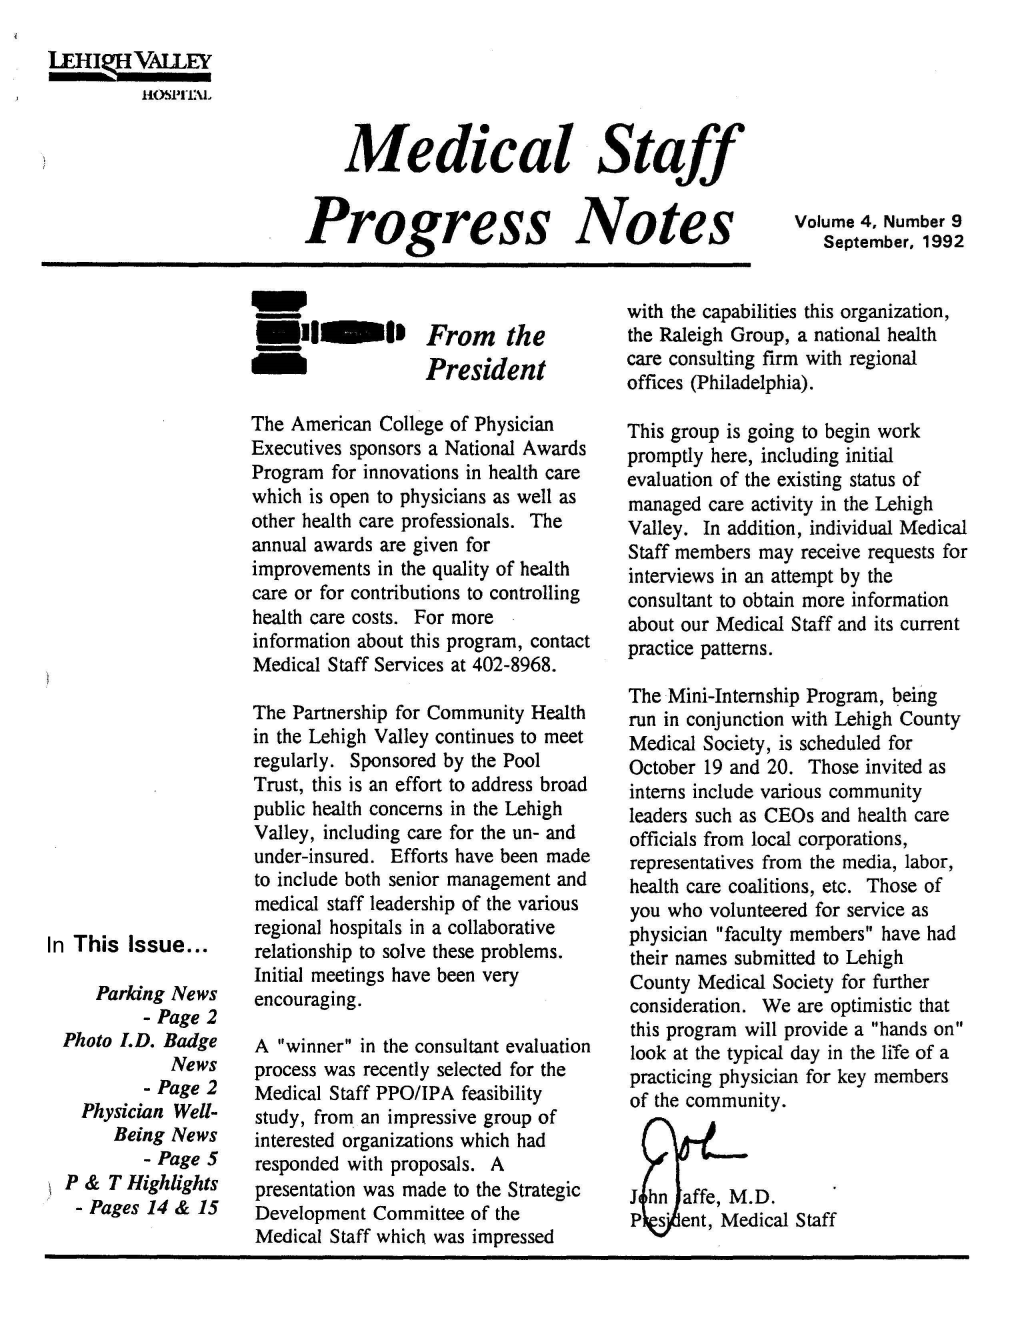 Progress Notes September, 1992